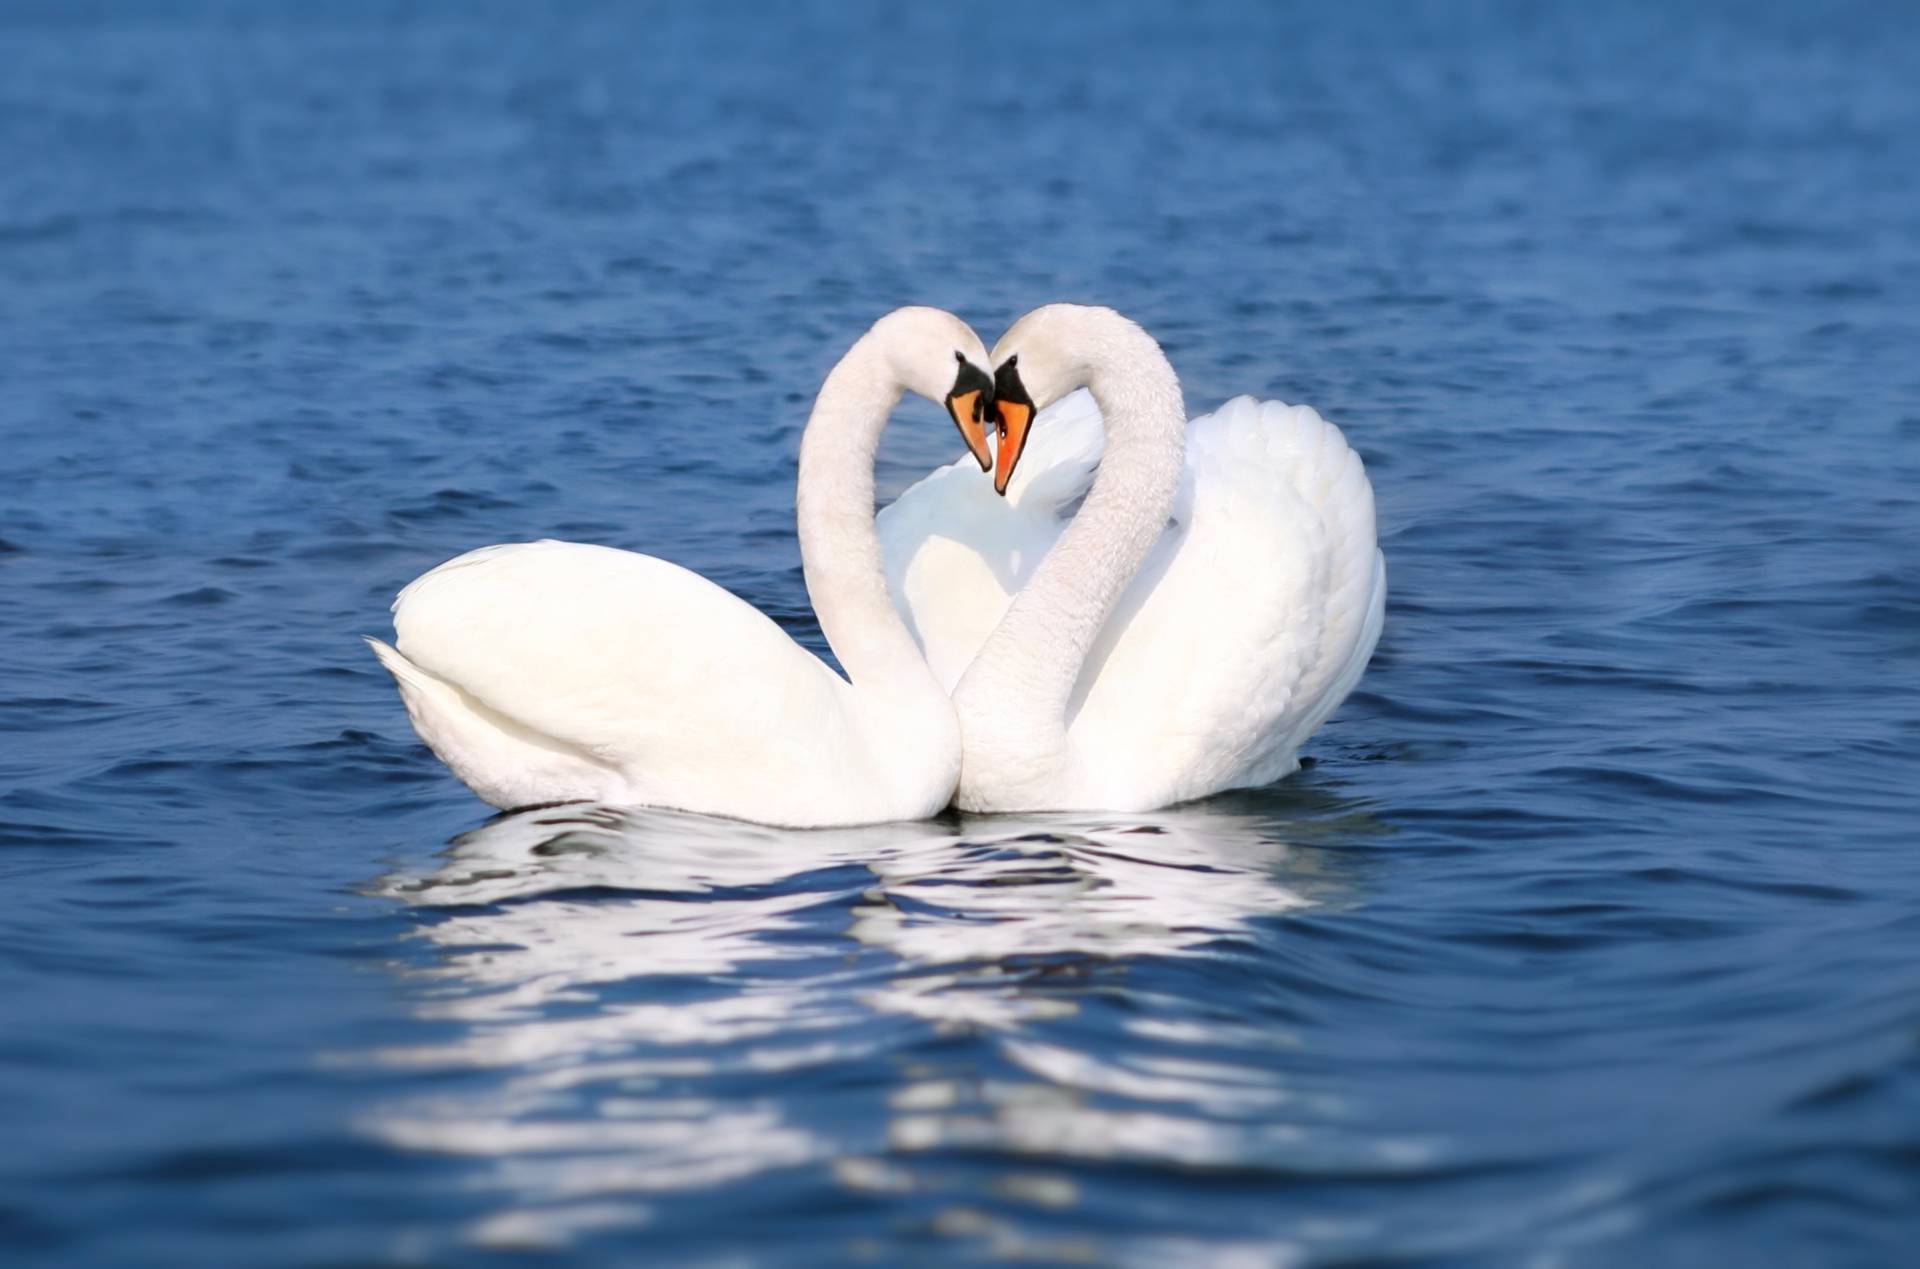 Papermoon Fototapete »Swan Love Couple« von Papermoon